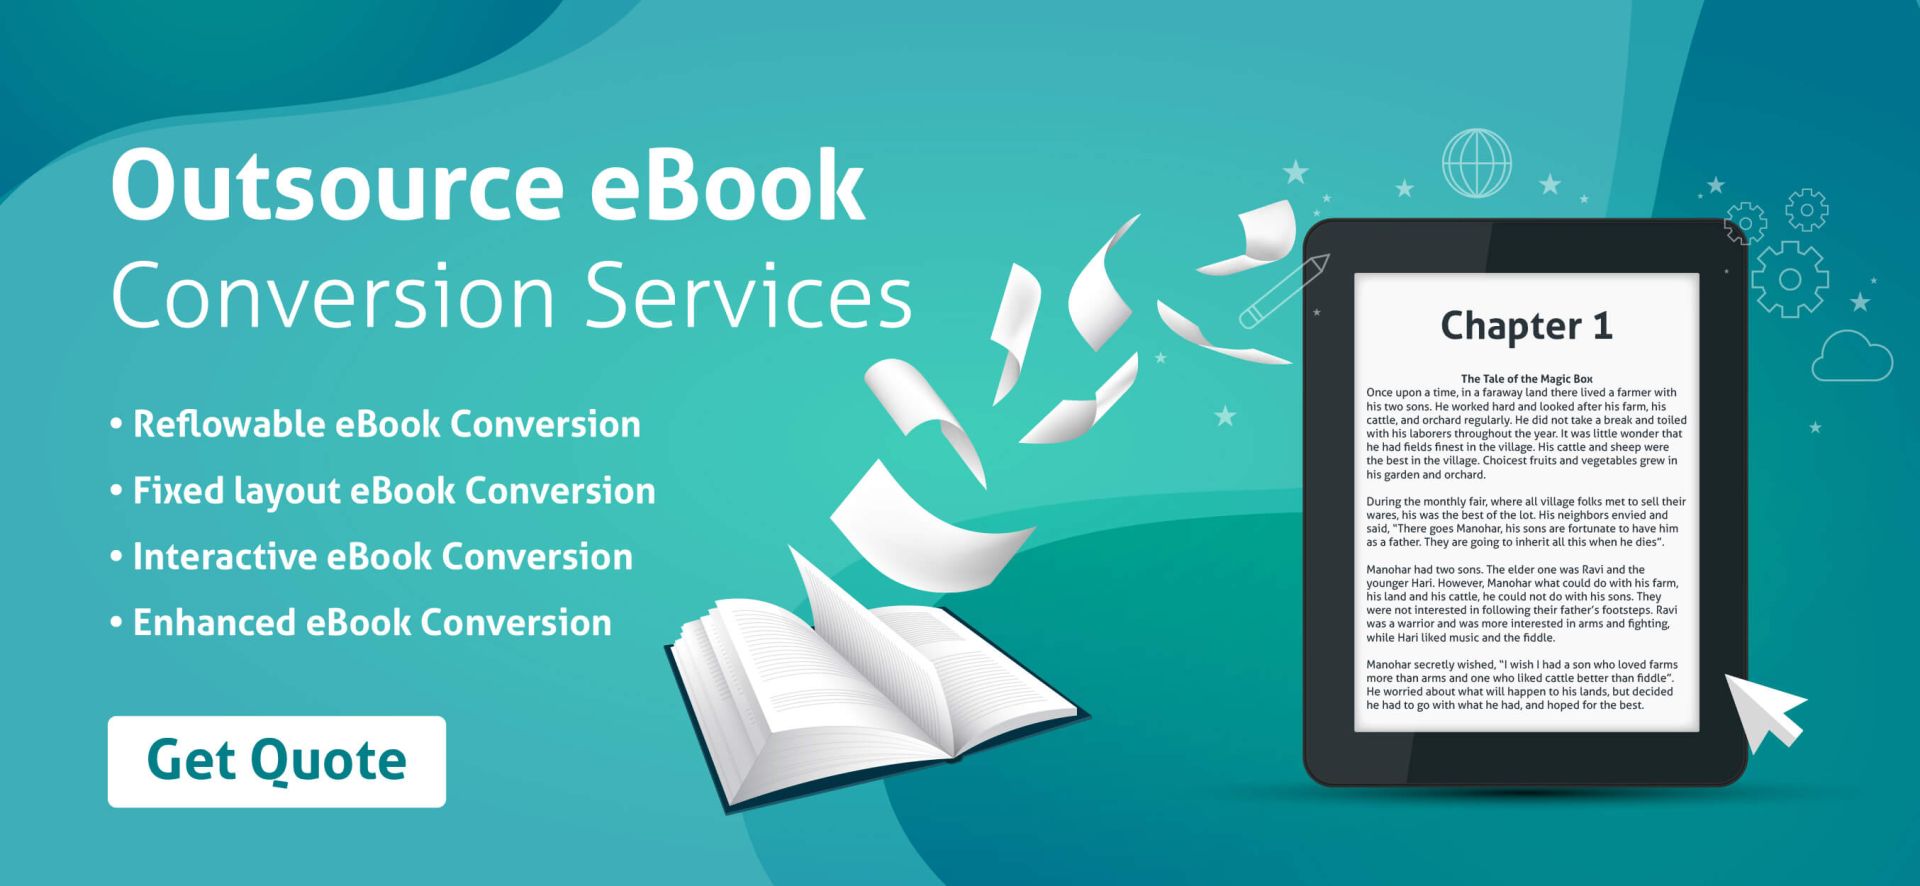 ebook conversion services